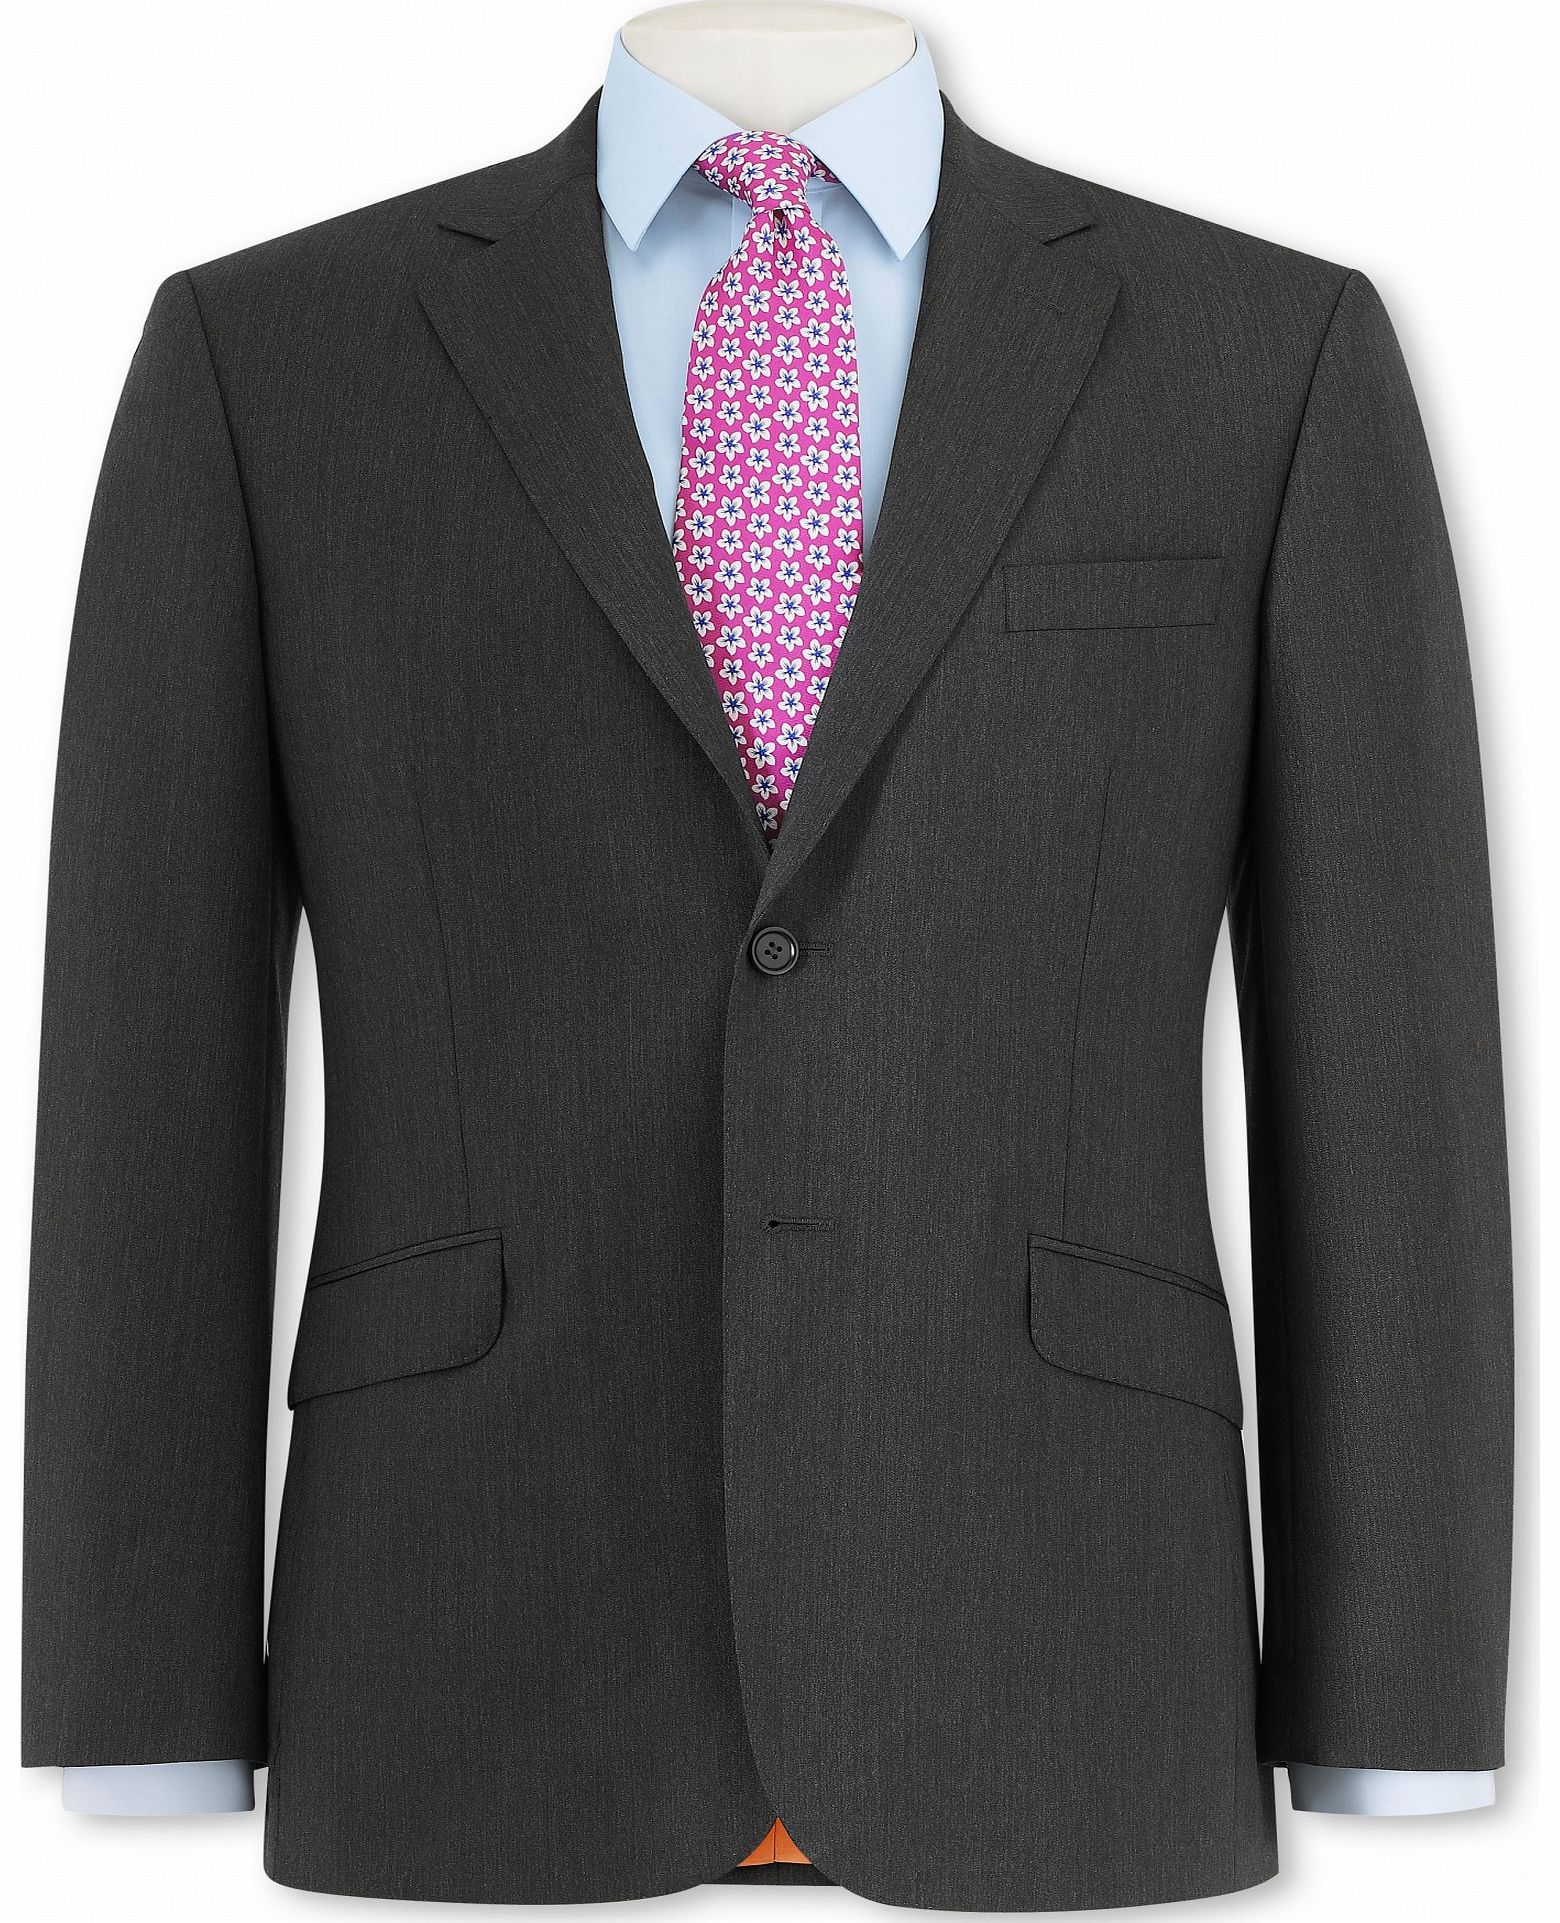 Grey Herringbone Suit Jacket 46`` Long